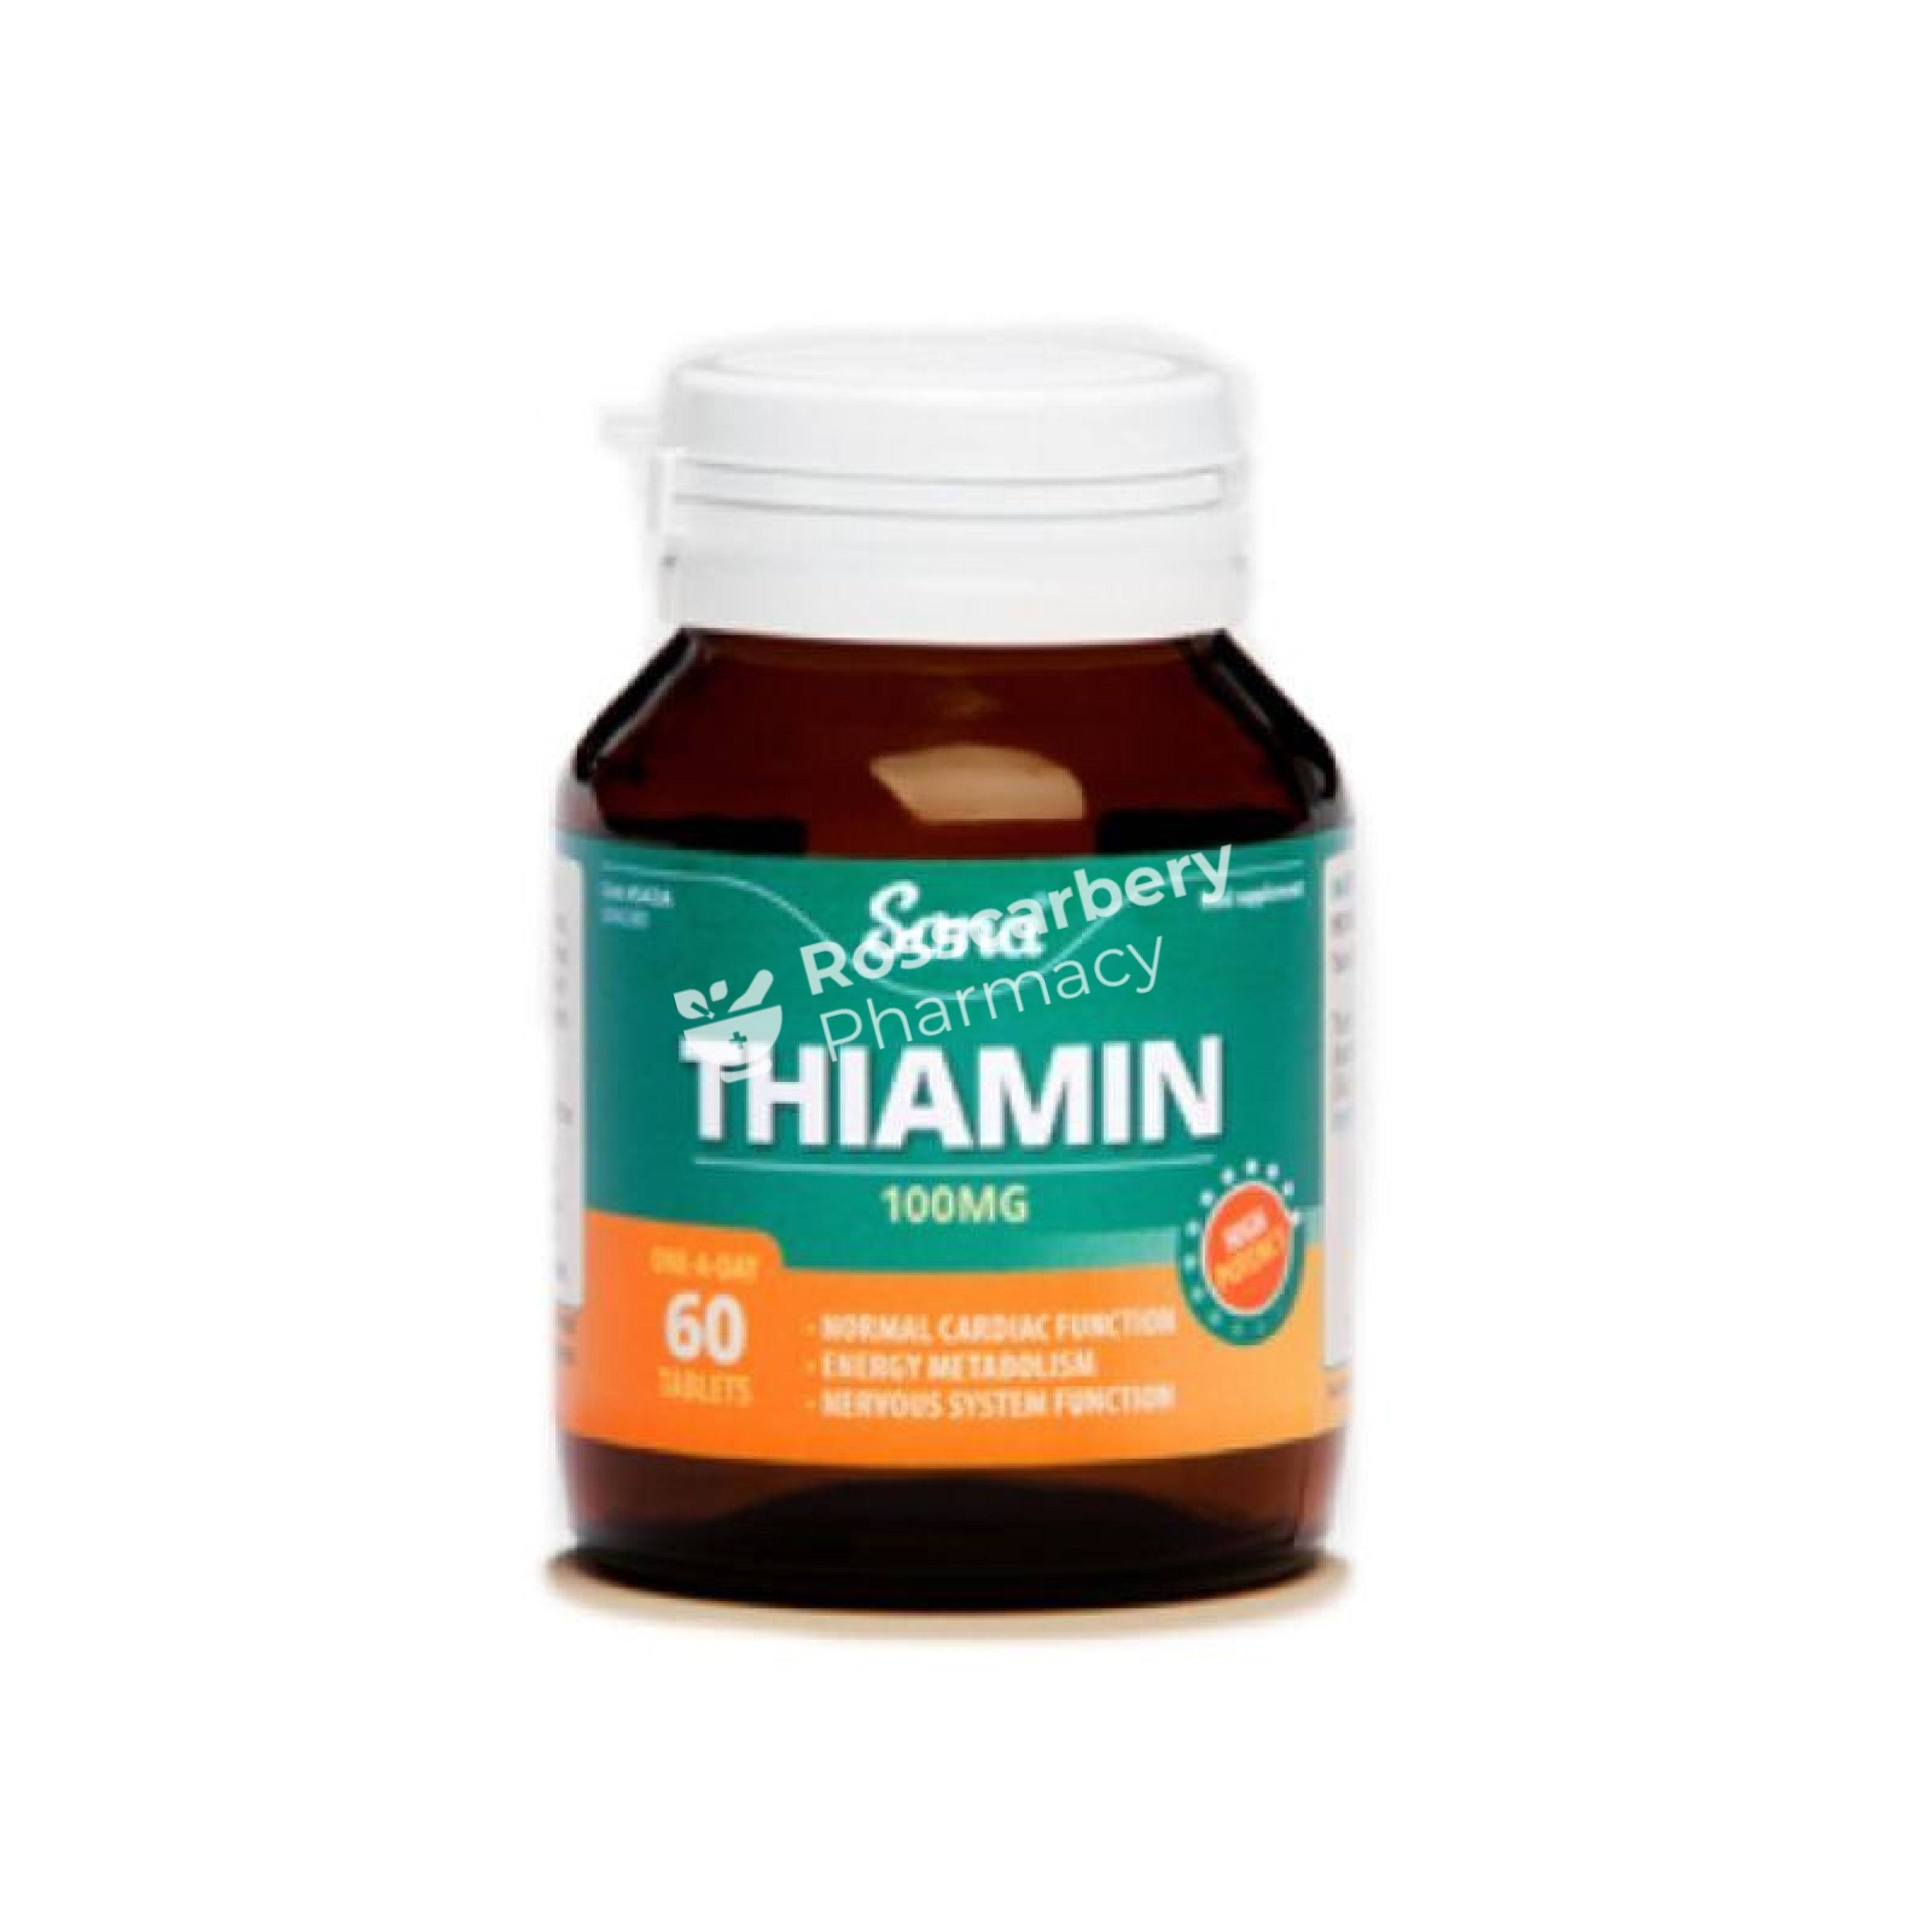 Sona Thiamin B1 100mg 60 Tablets